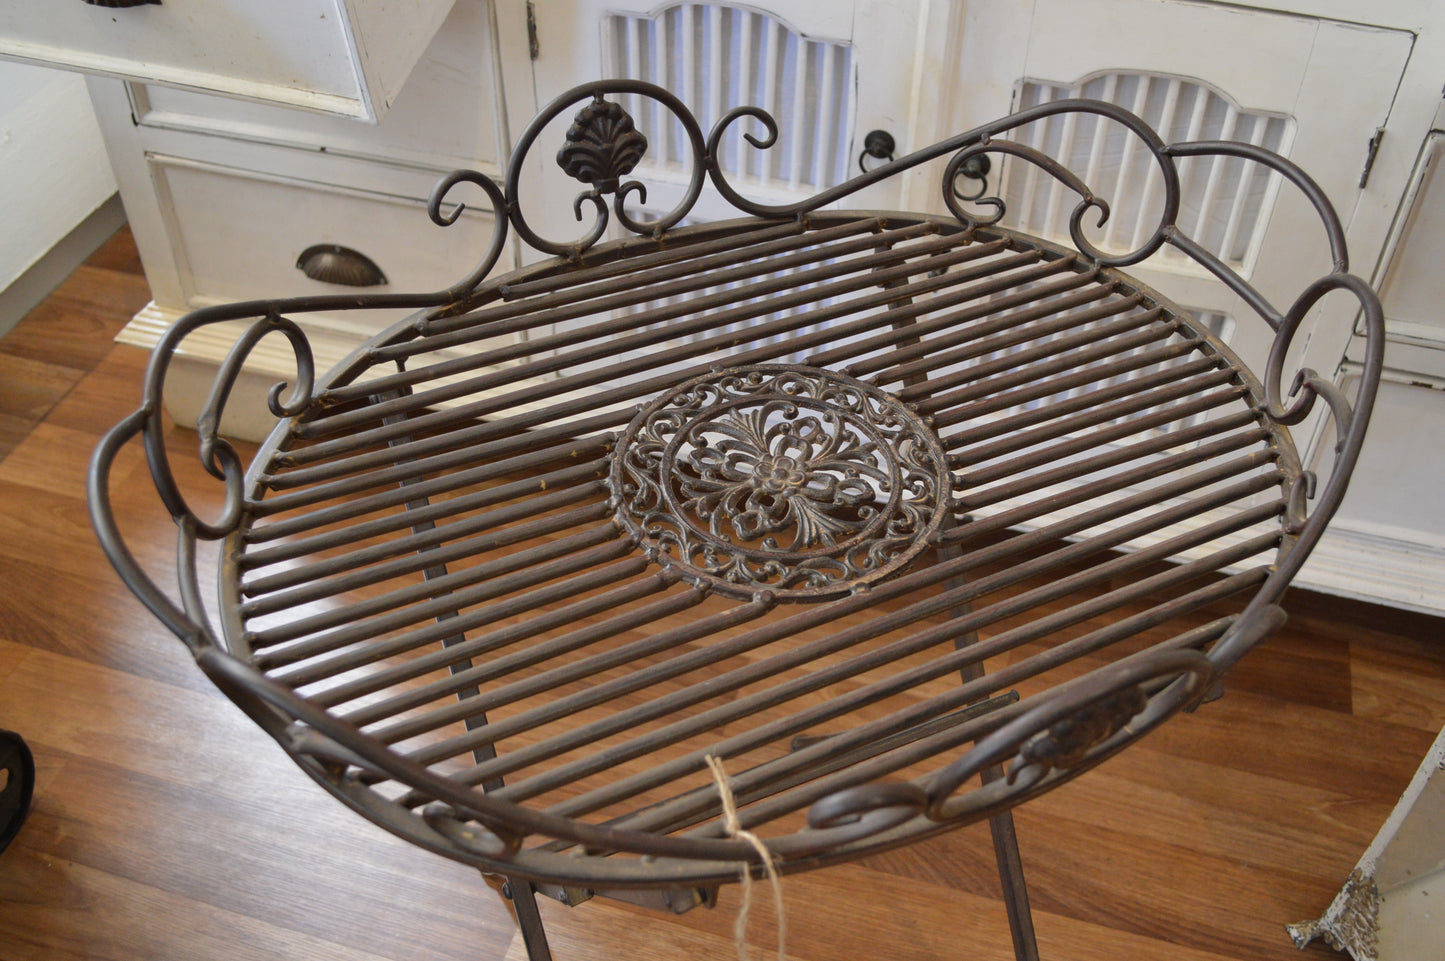 Romantisk bord i metall. Passar utmärkt i trädgården, orangeriet eller balkongen.  Material: Järn  OBS: hopfällbar  Mått: 49x63 cm, H 70cm